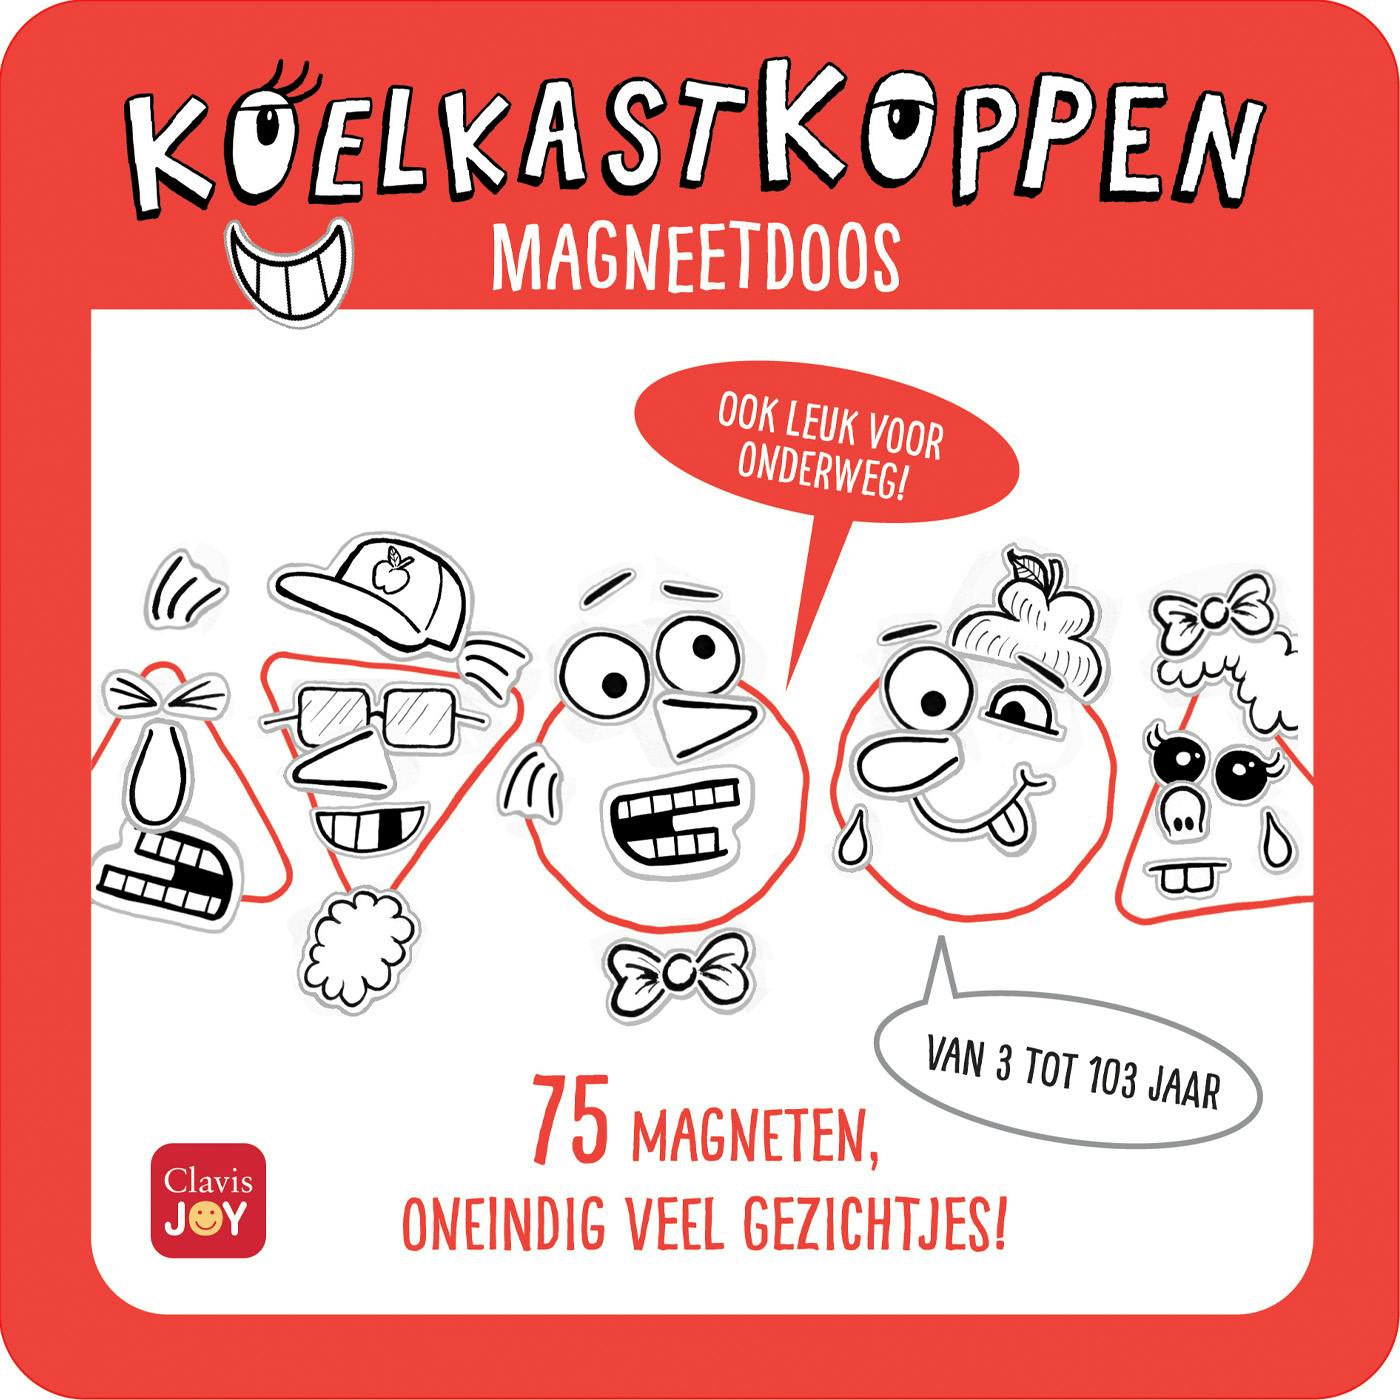 ISBN 5407009981050
Titel Magneetdoos Koelkastkoppen